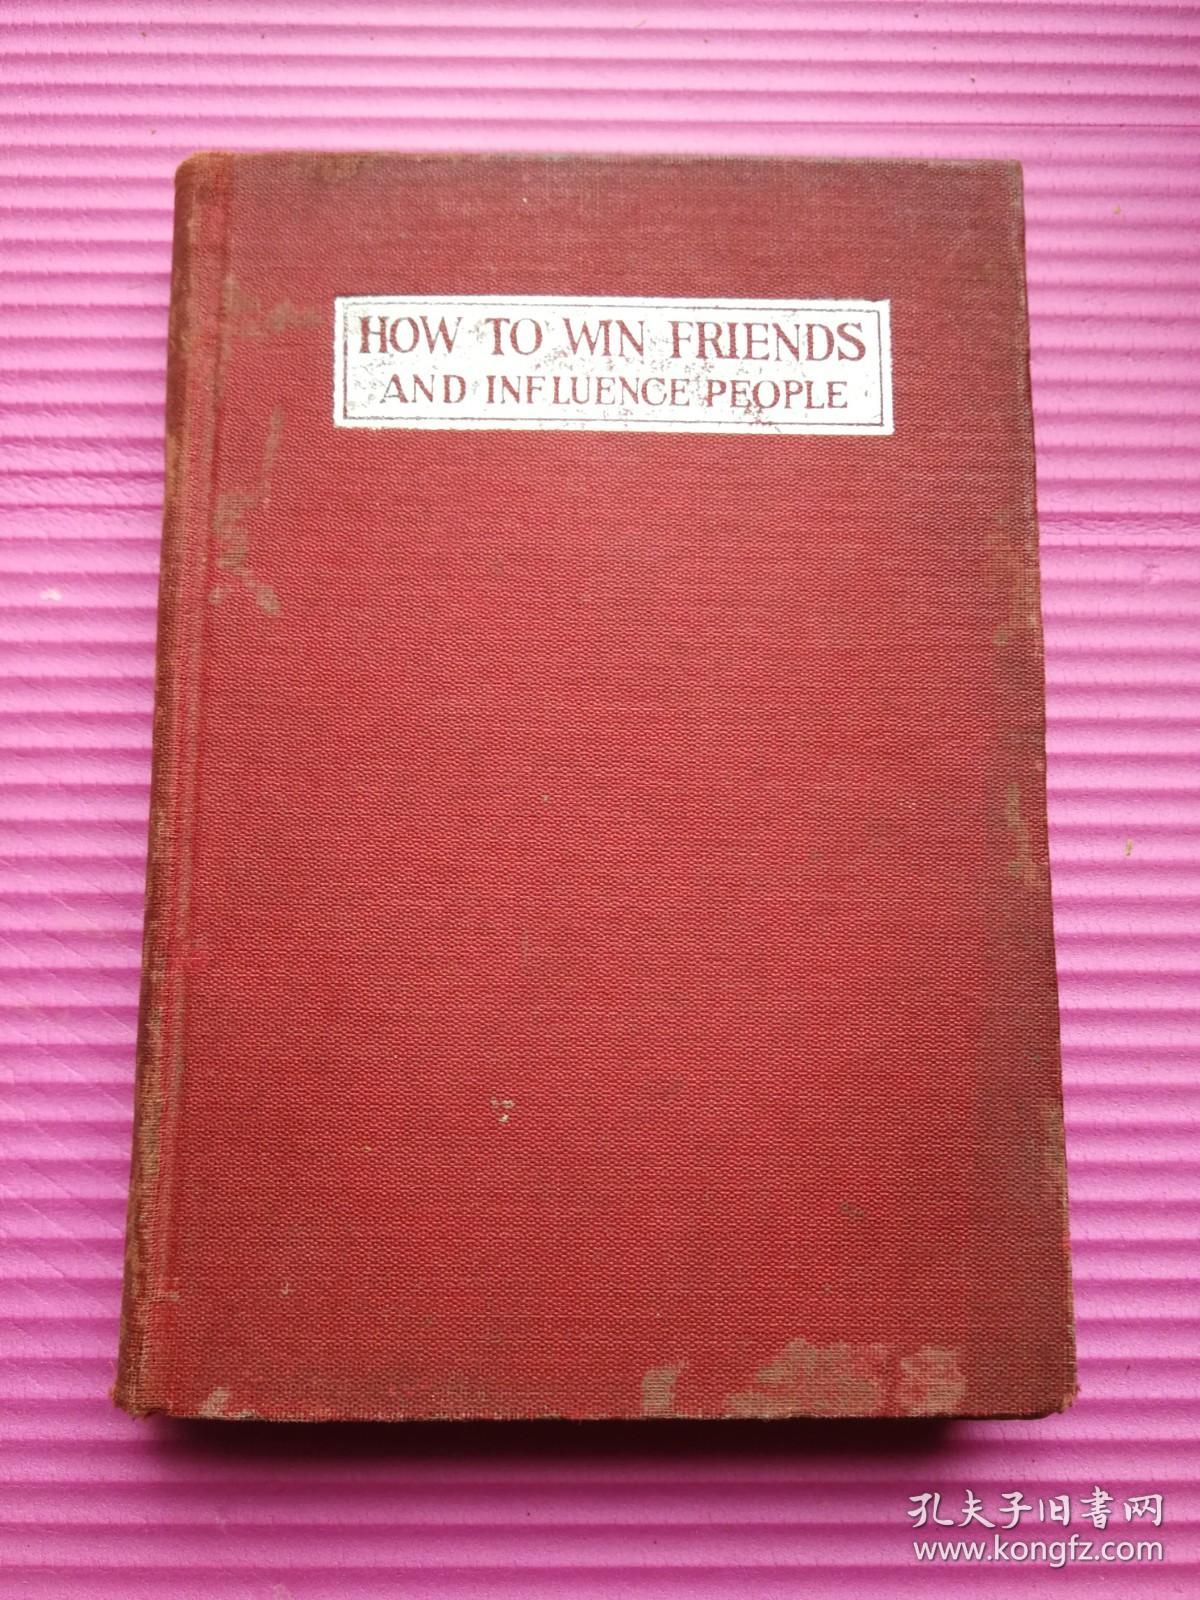 布面精装《如何赢得朋友及影响他人》全一册 [美]戴尔·卡耐基 著1938年